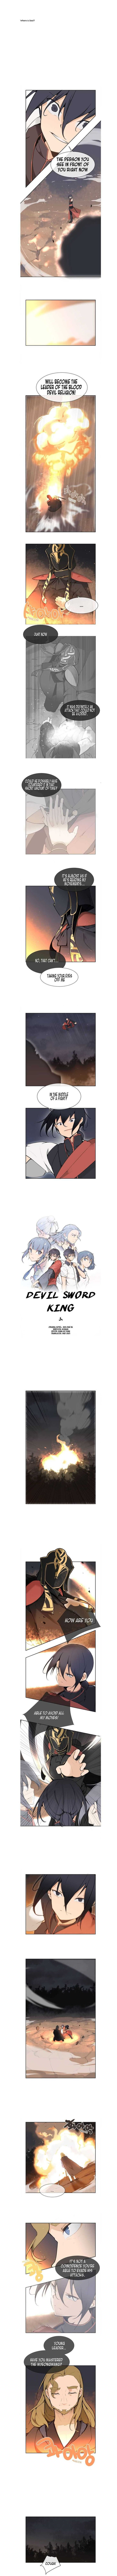 Devil Sword King 41 1